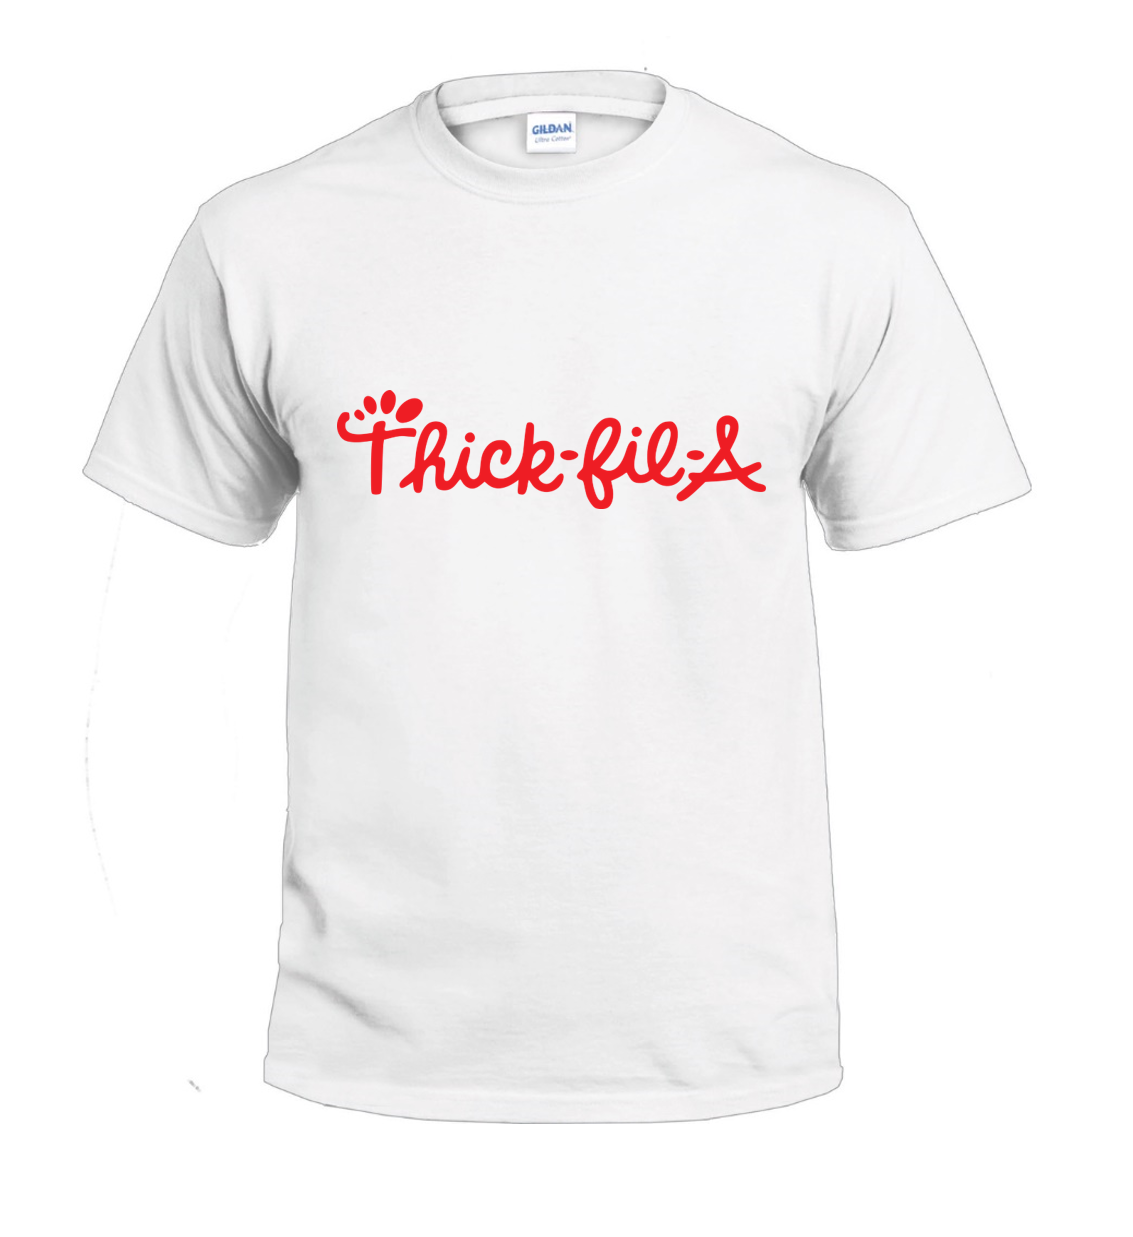 Thick-fil-a t-shirt